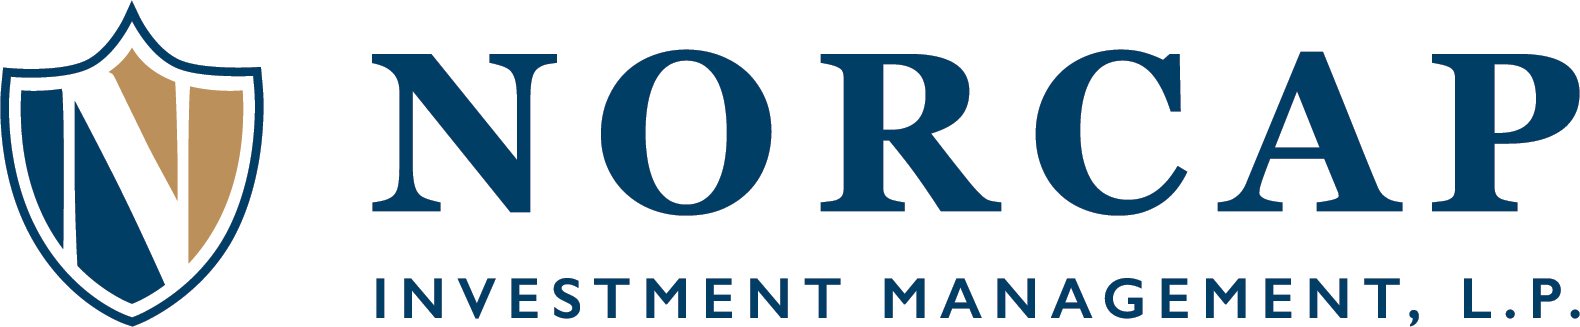 NorCap Investment Management, L.P. Logo.jpg